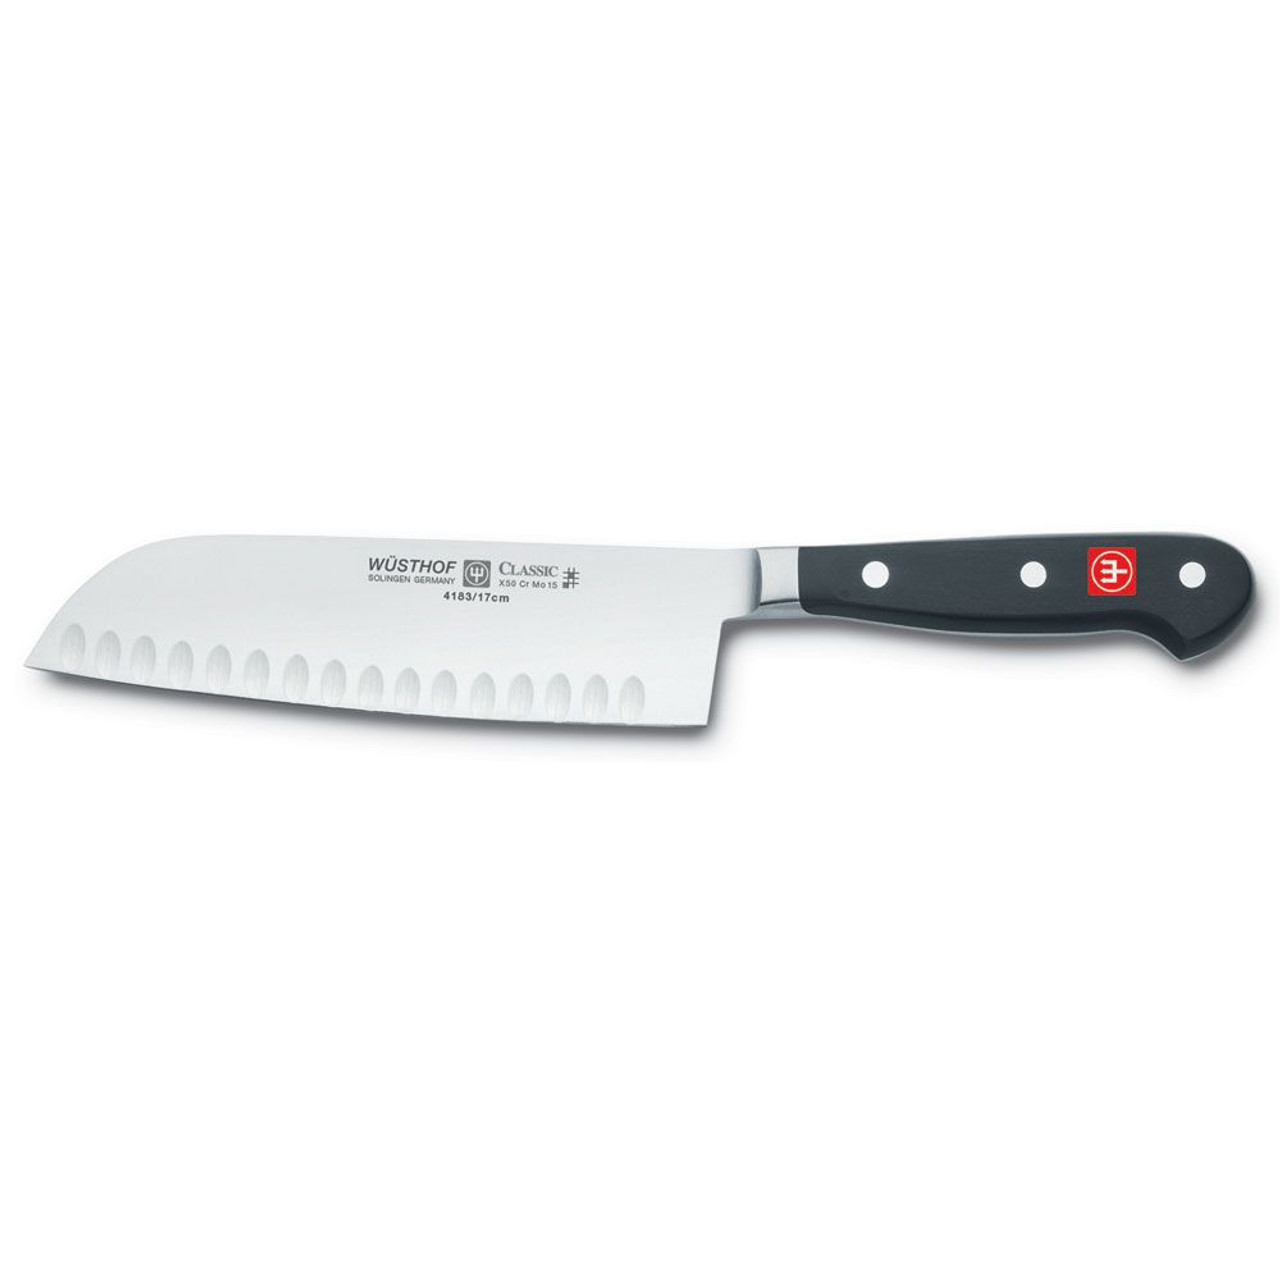 Kai Pure Komachi 2 Kitchen Knife Review - Consumer Reports